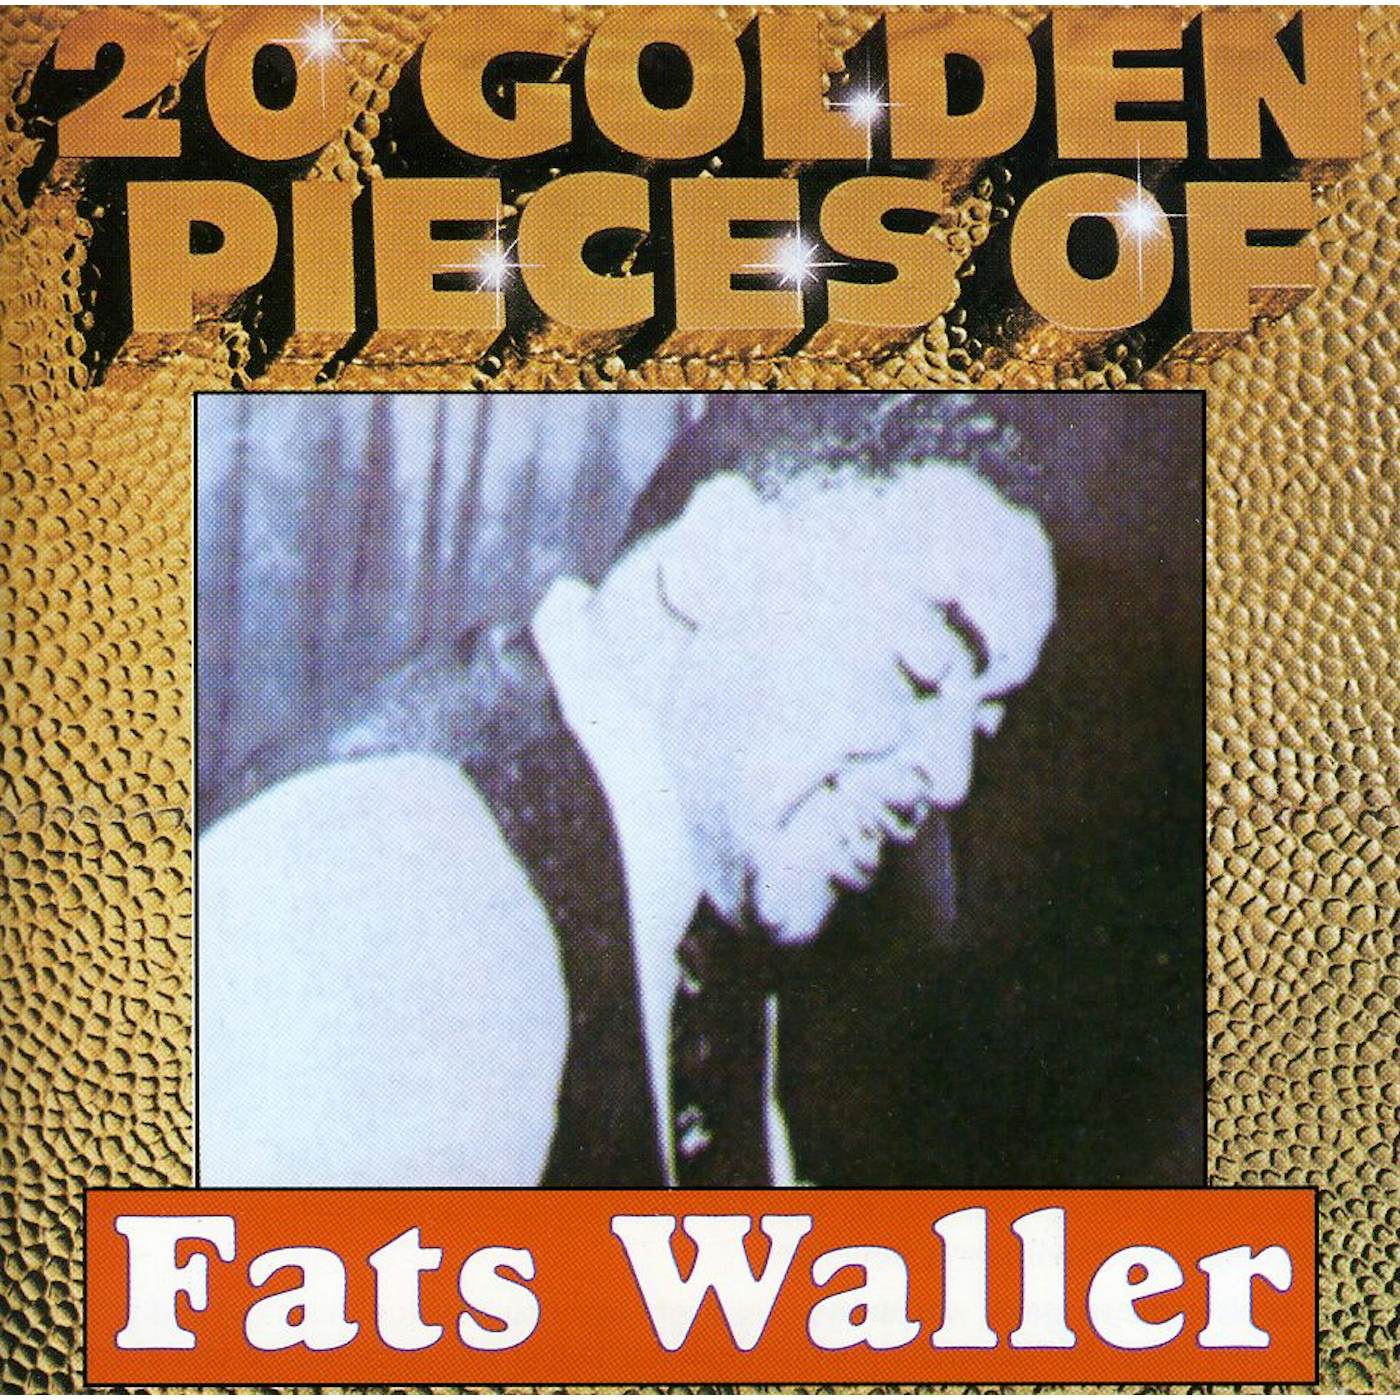 20 GOLDEN PIECES OF FATS WALLER CD